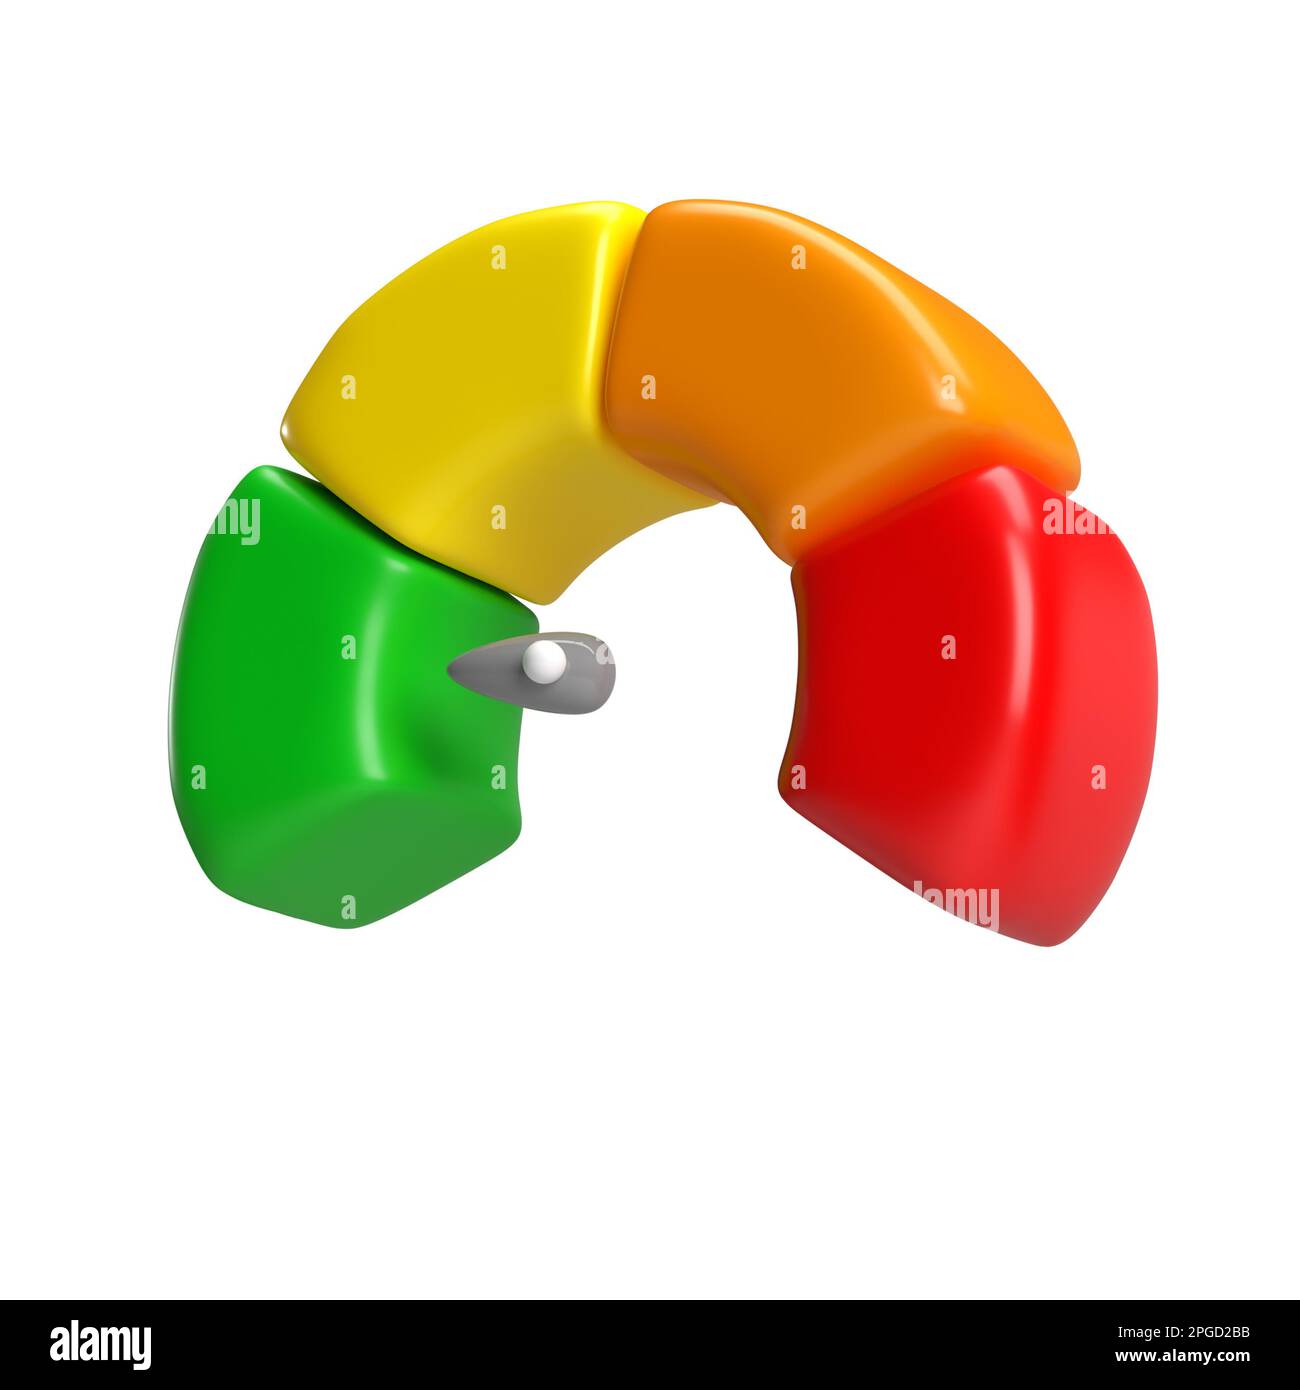 compteur de vitesse à 3d icônes avec flèche pour tableau de bord avec indicateurs verts, jaunes, orange et rouges. Jauge du compte-tours. Faible, moyen, élevé et risque Banque D'Images